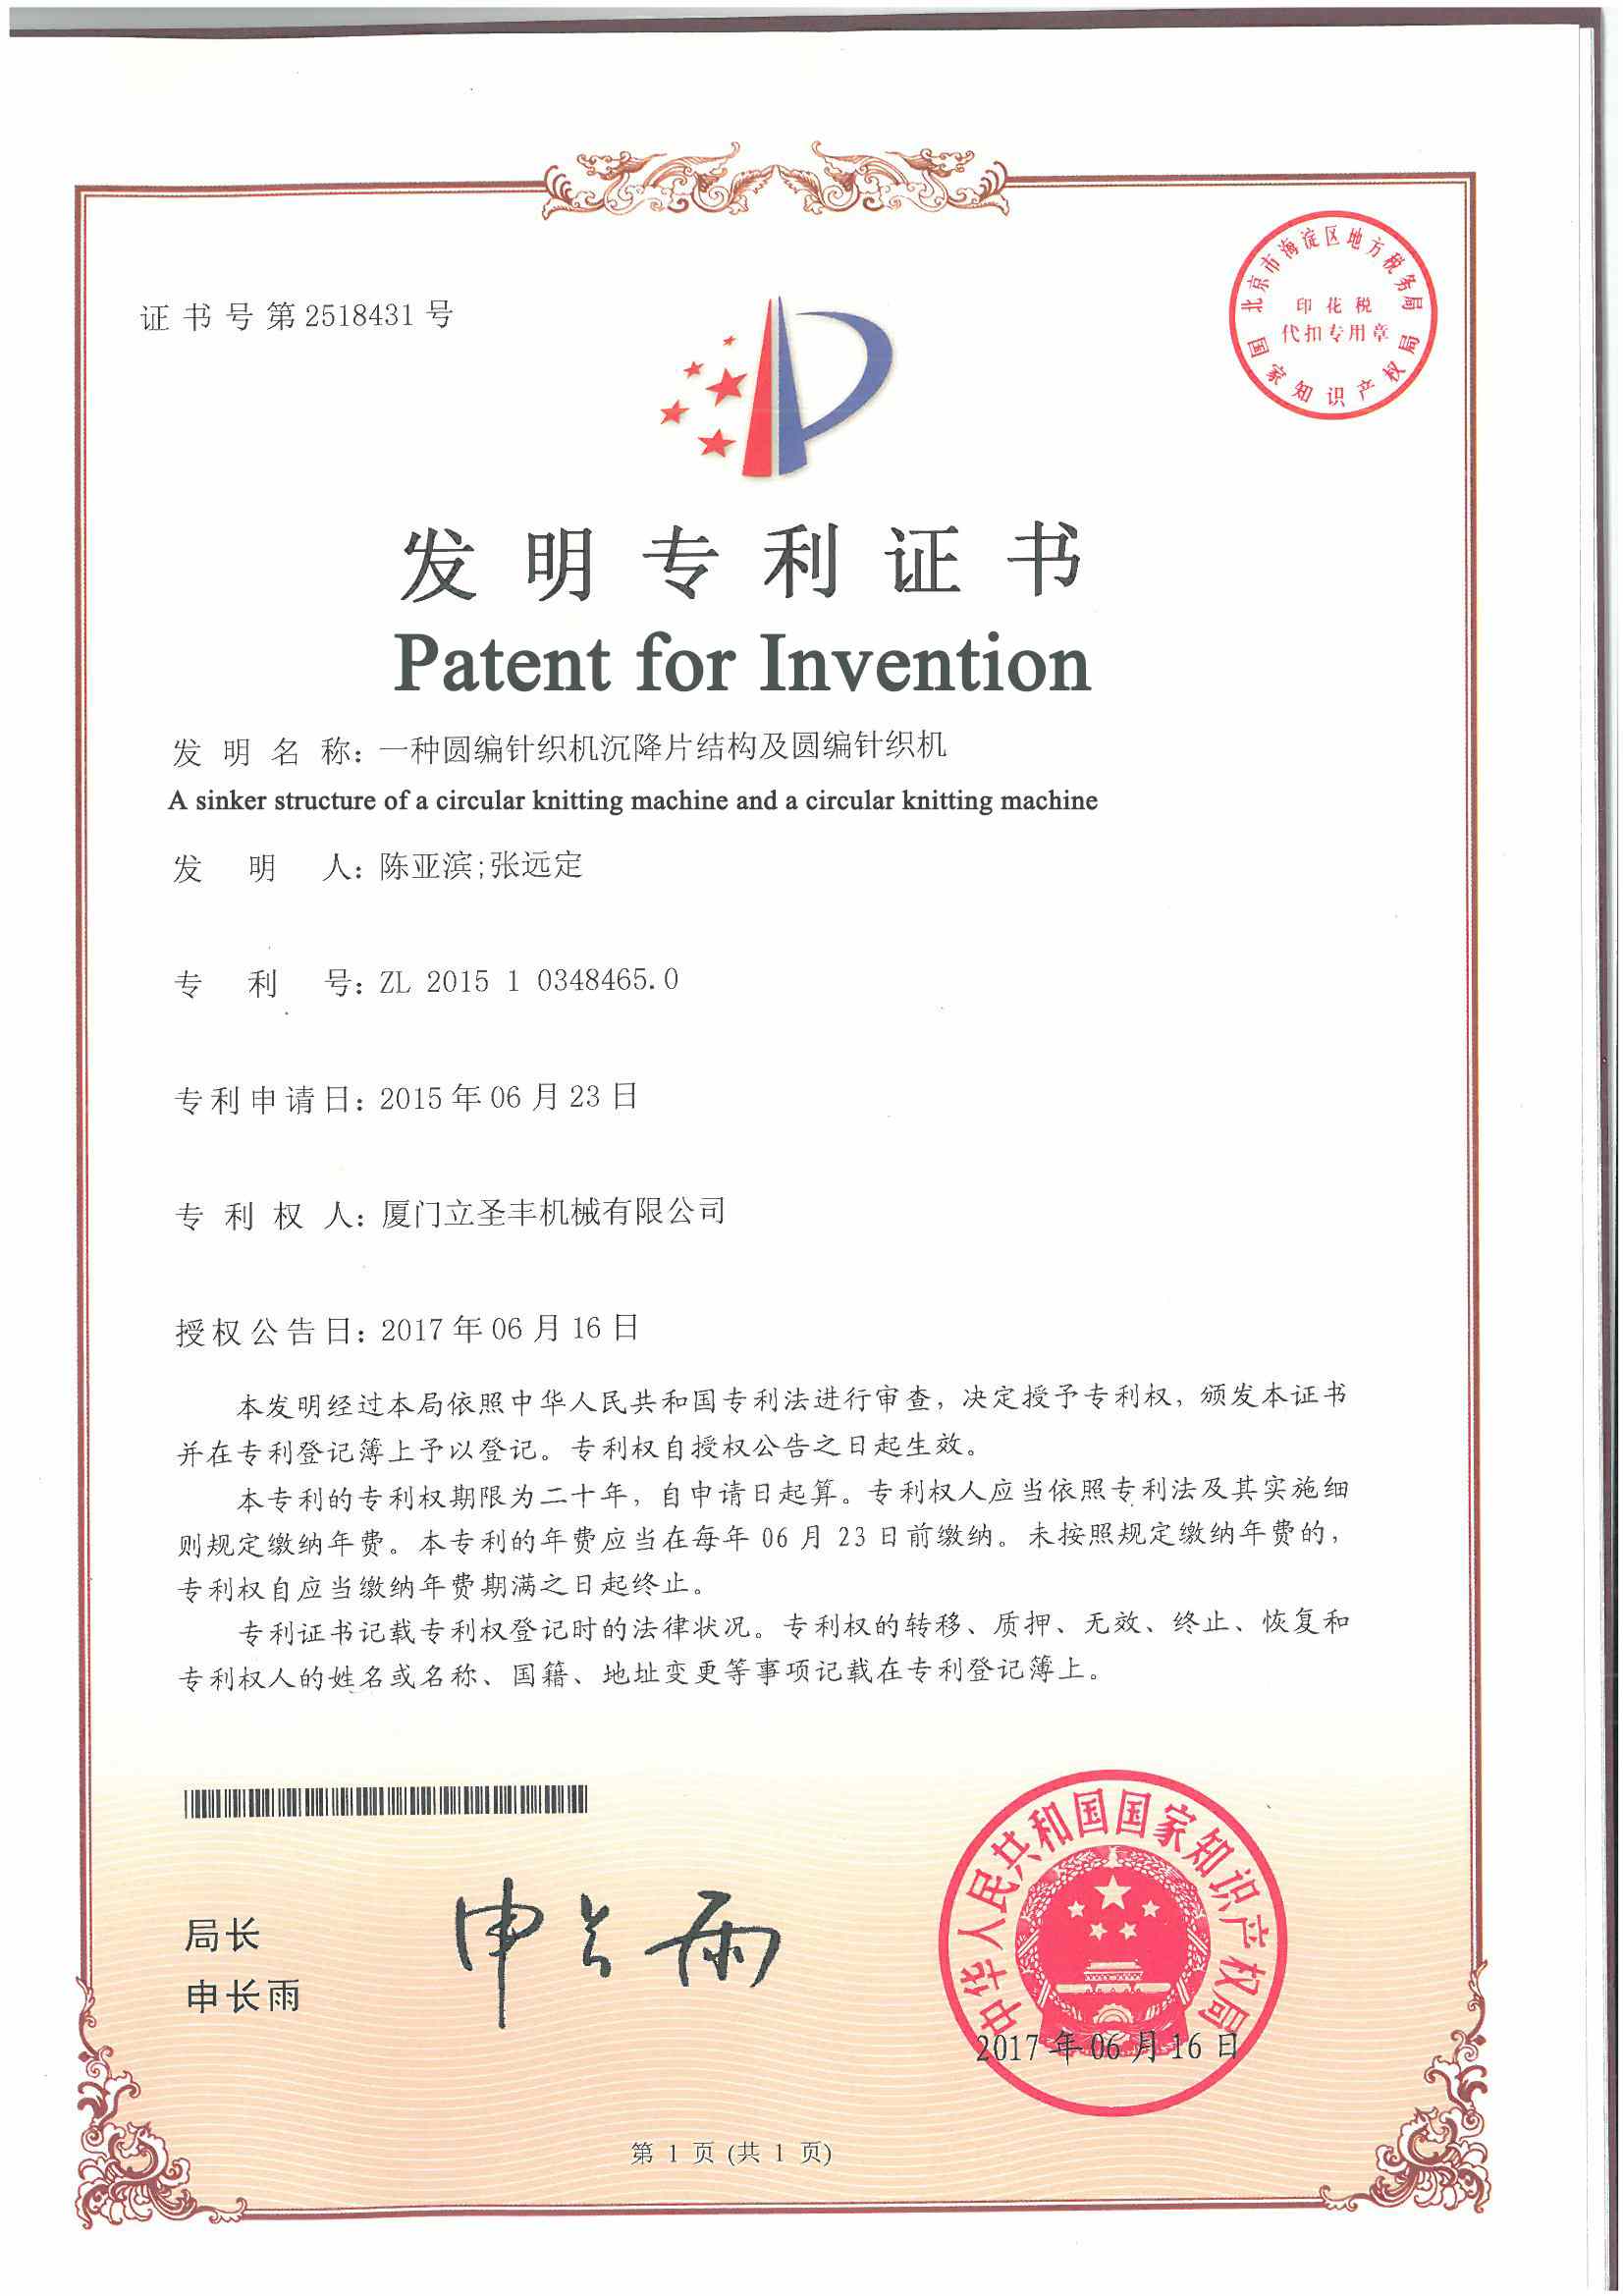 patentler
